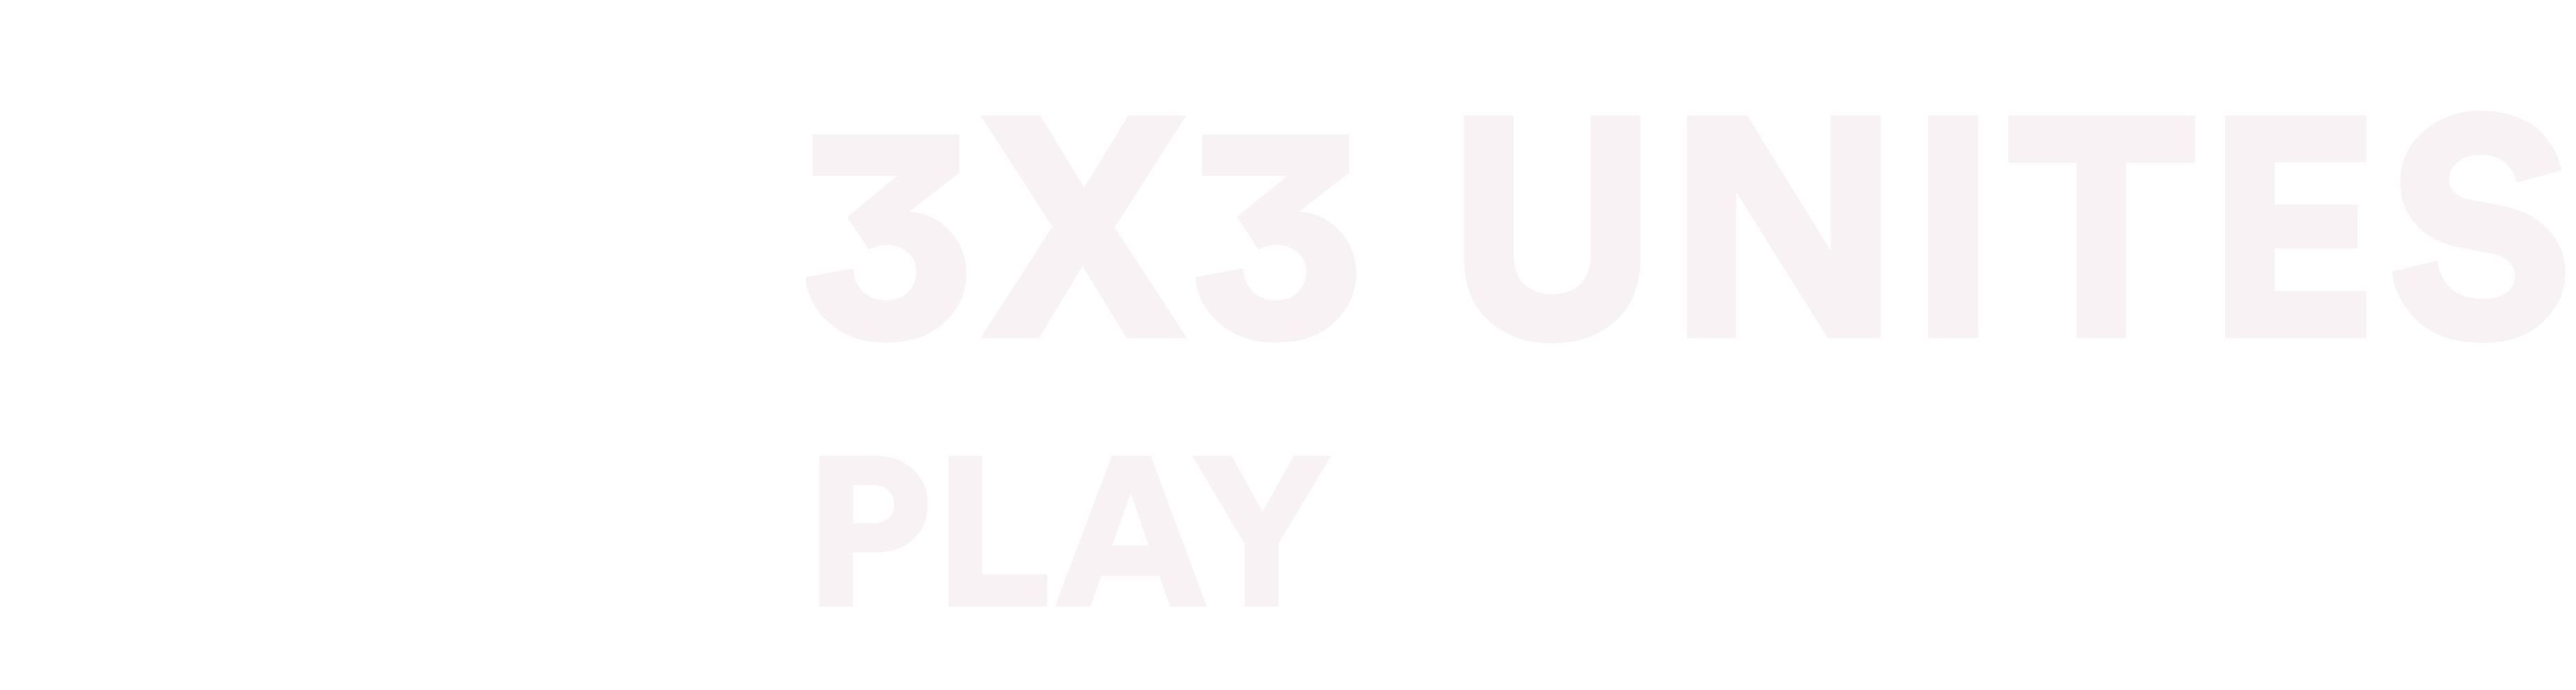 3X3 Unites Play logo